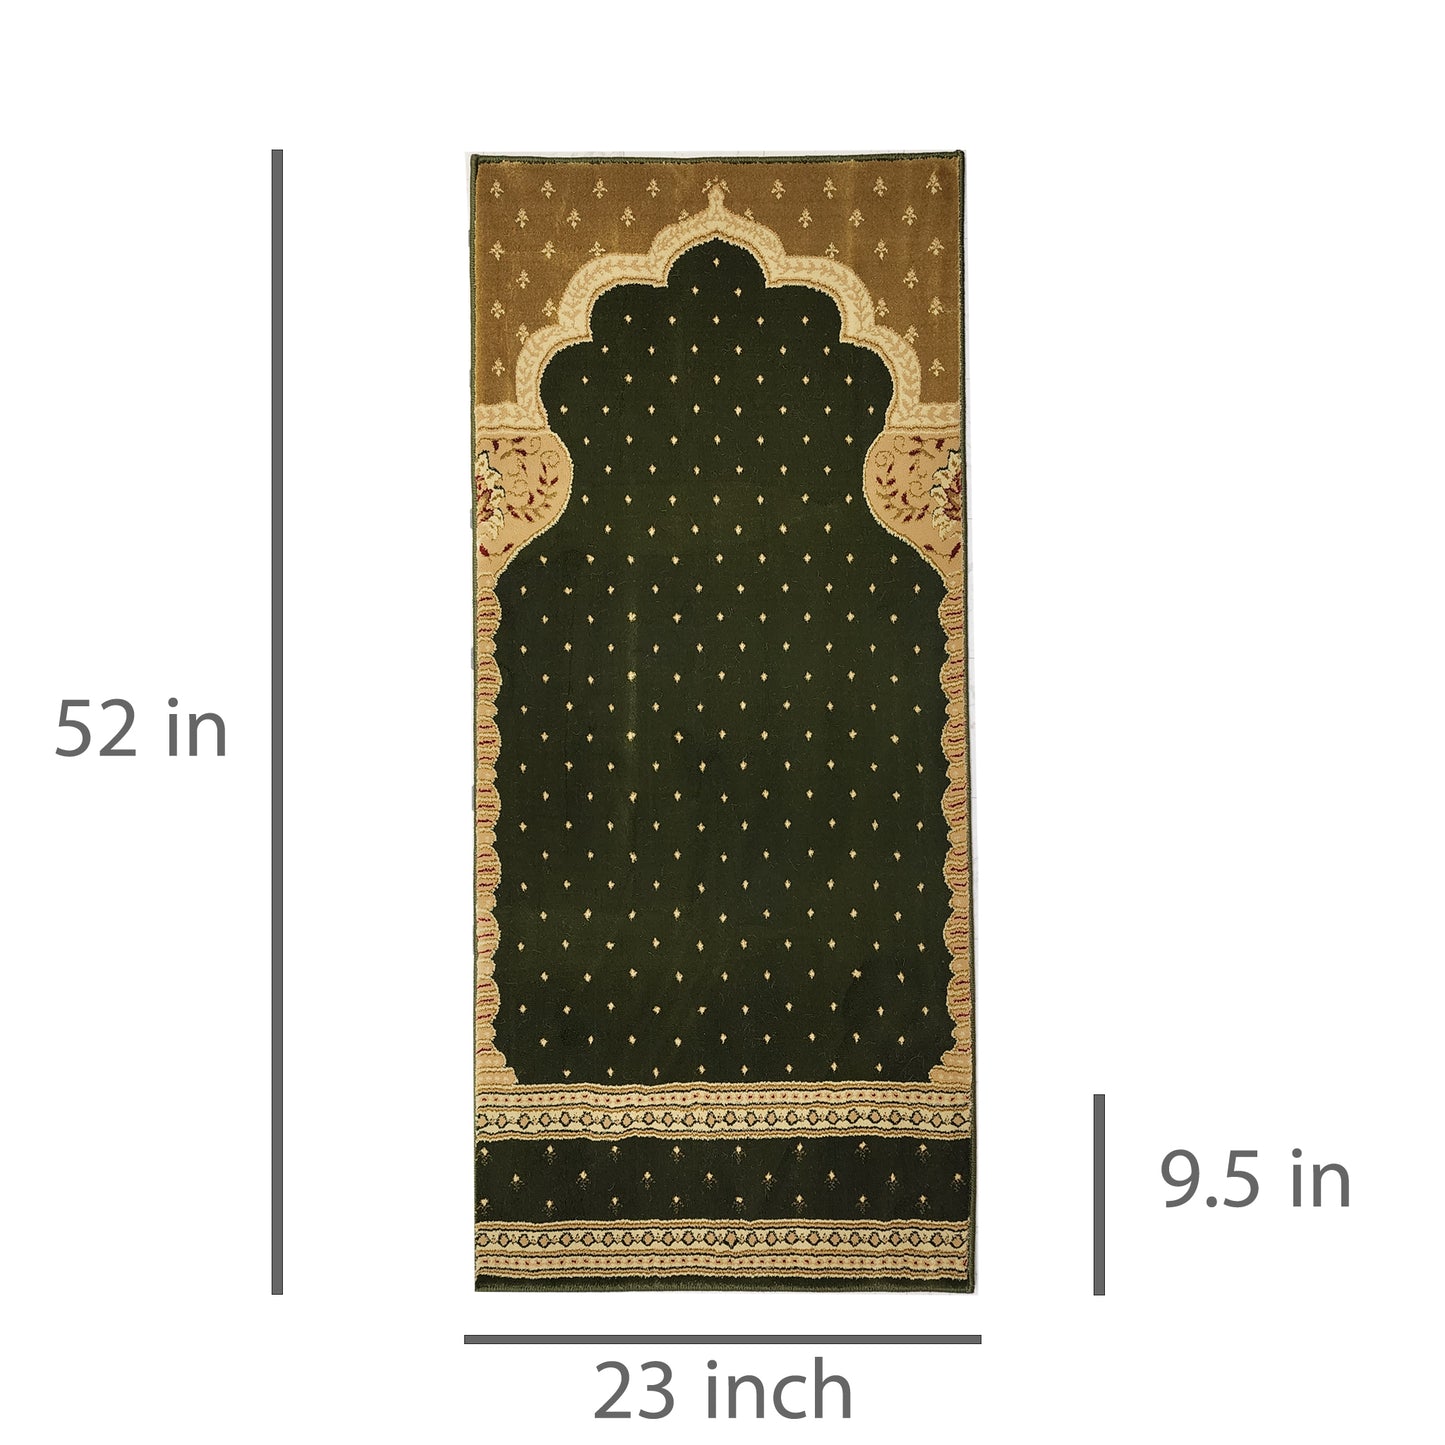 MADINA Green-Gold Single Prayer Carpet Mat